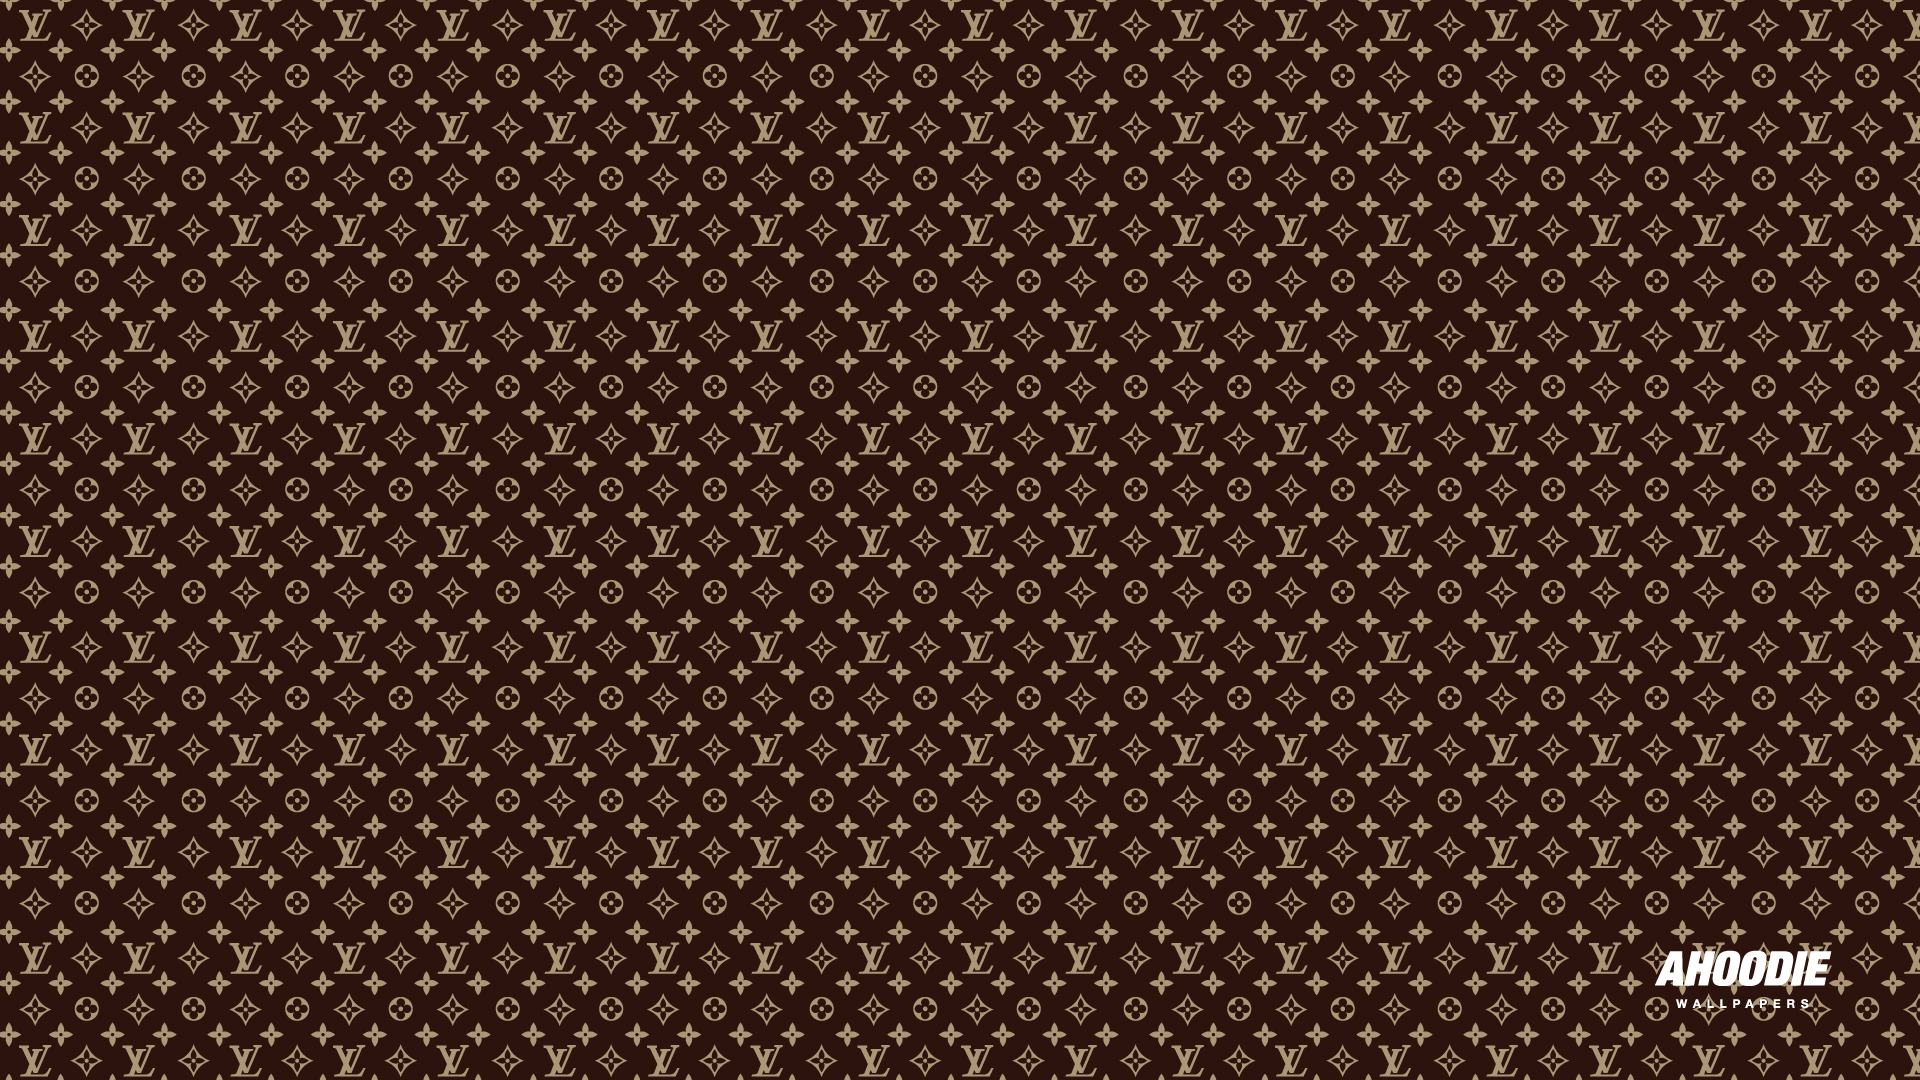 Hd Wallpapers Louis Vuitton Desktop 19201080 Wallpaper 19201080